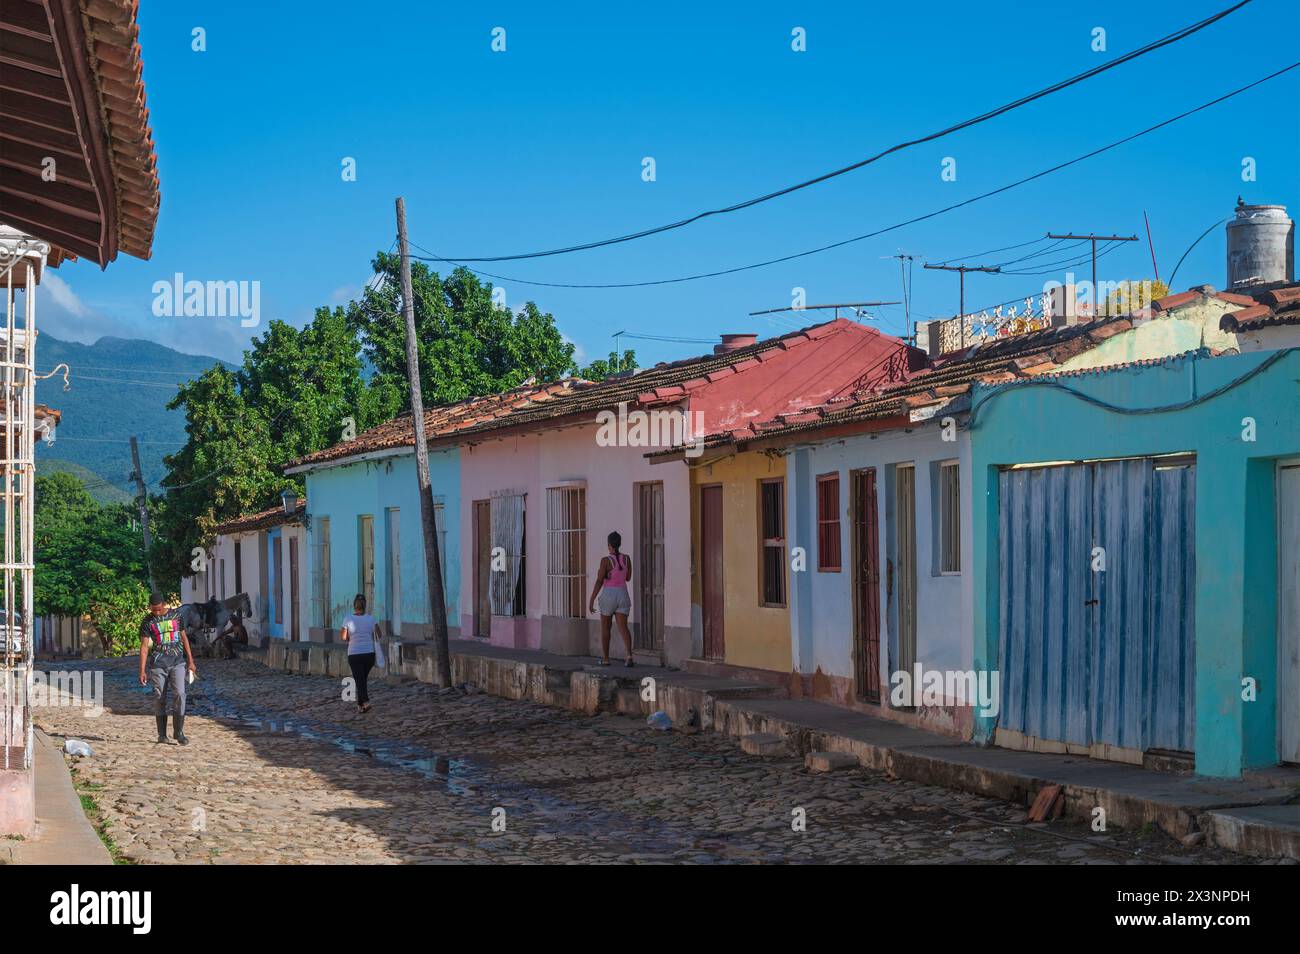 Une vue le long de l'une des ruelles de la vieille ville de Trinidad, Cuba, montrant les rues pavées traditionnelles et les maisons aux couleurs pastel. Banque D'Images